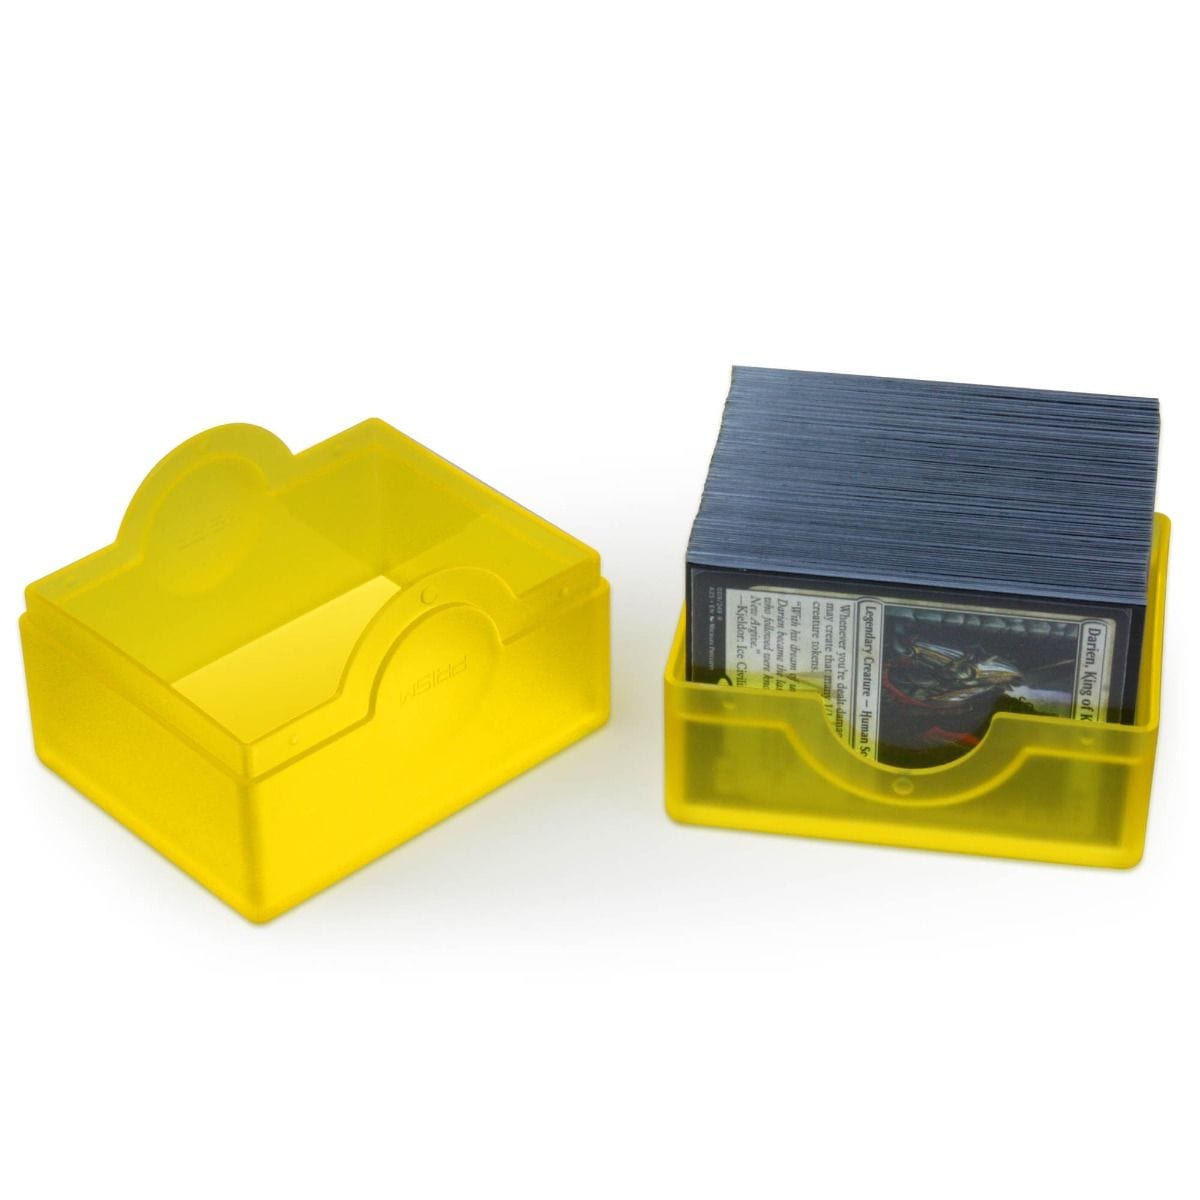 Prism Deck Case Yellow - Saltire Games